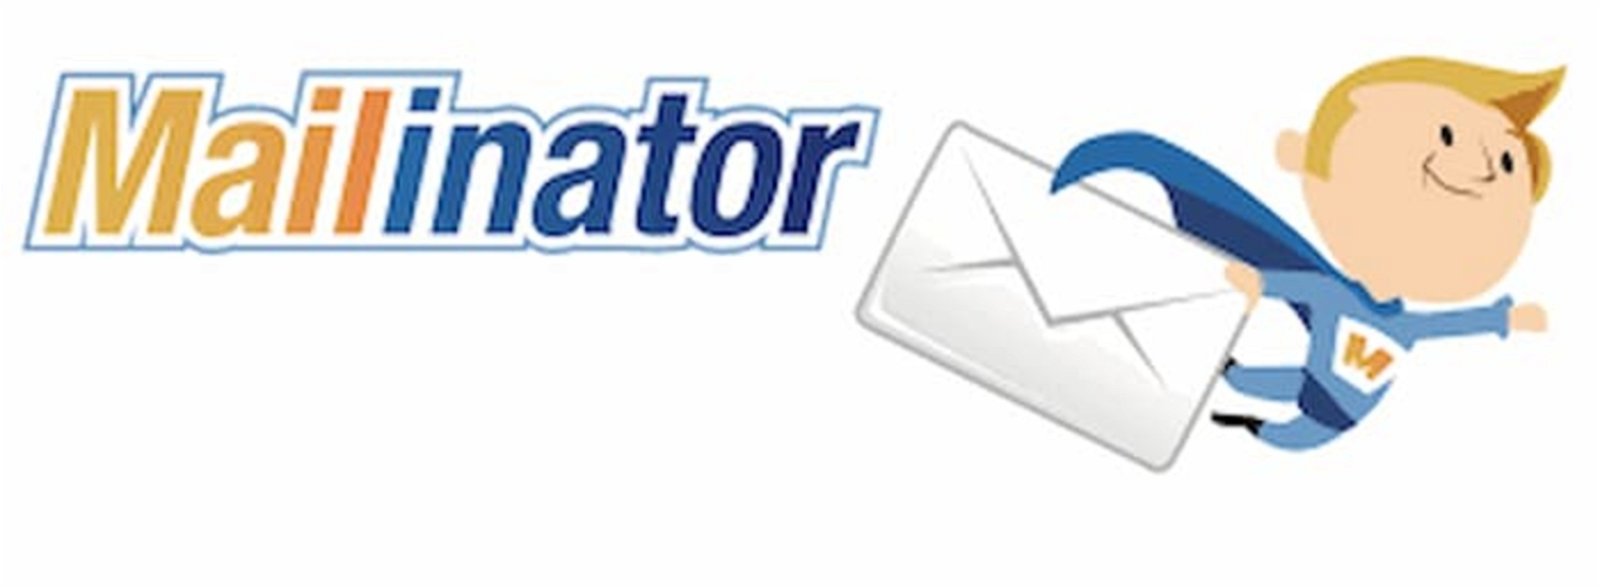 Las mejores webs para crear direcciones de correo electrónico temporales